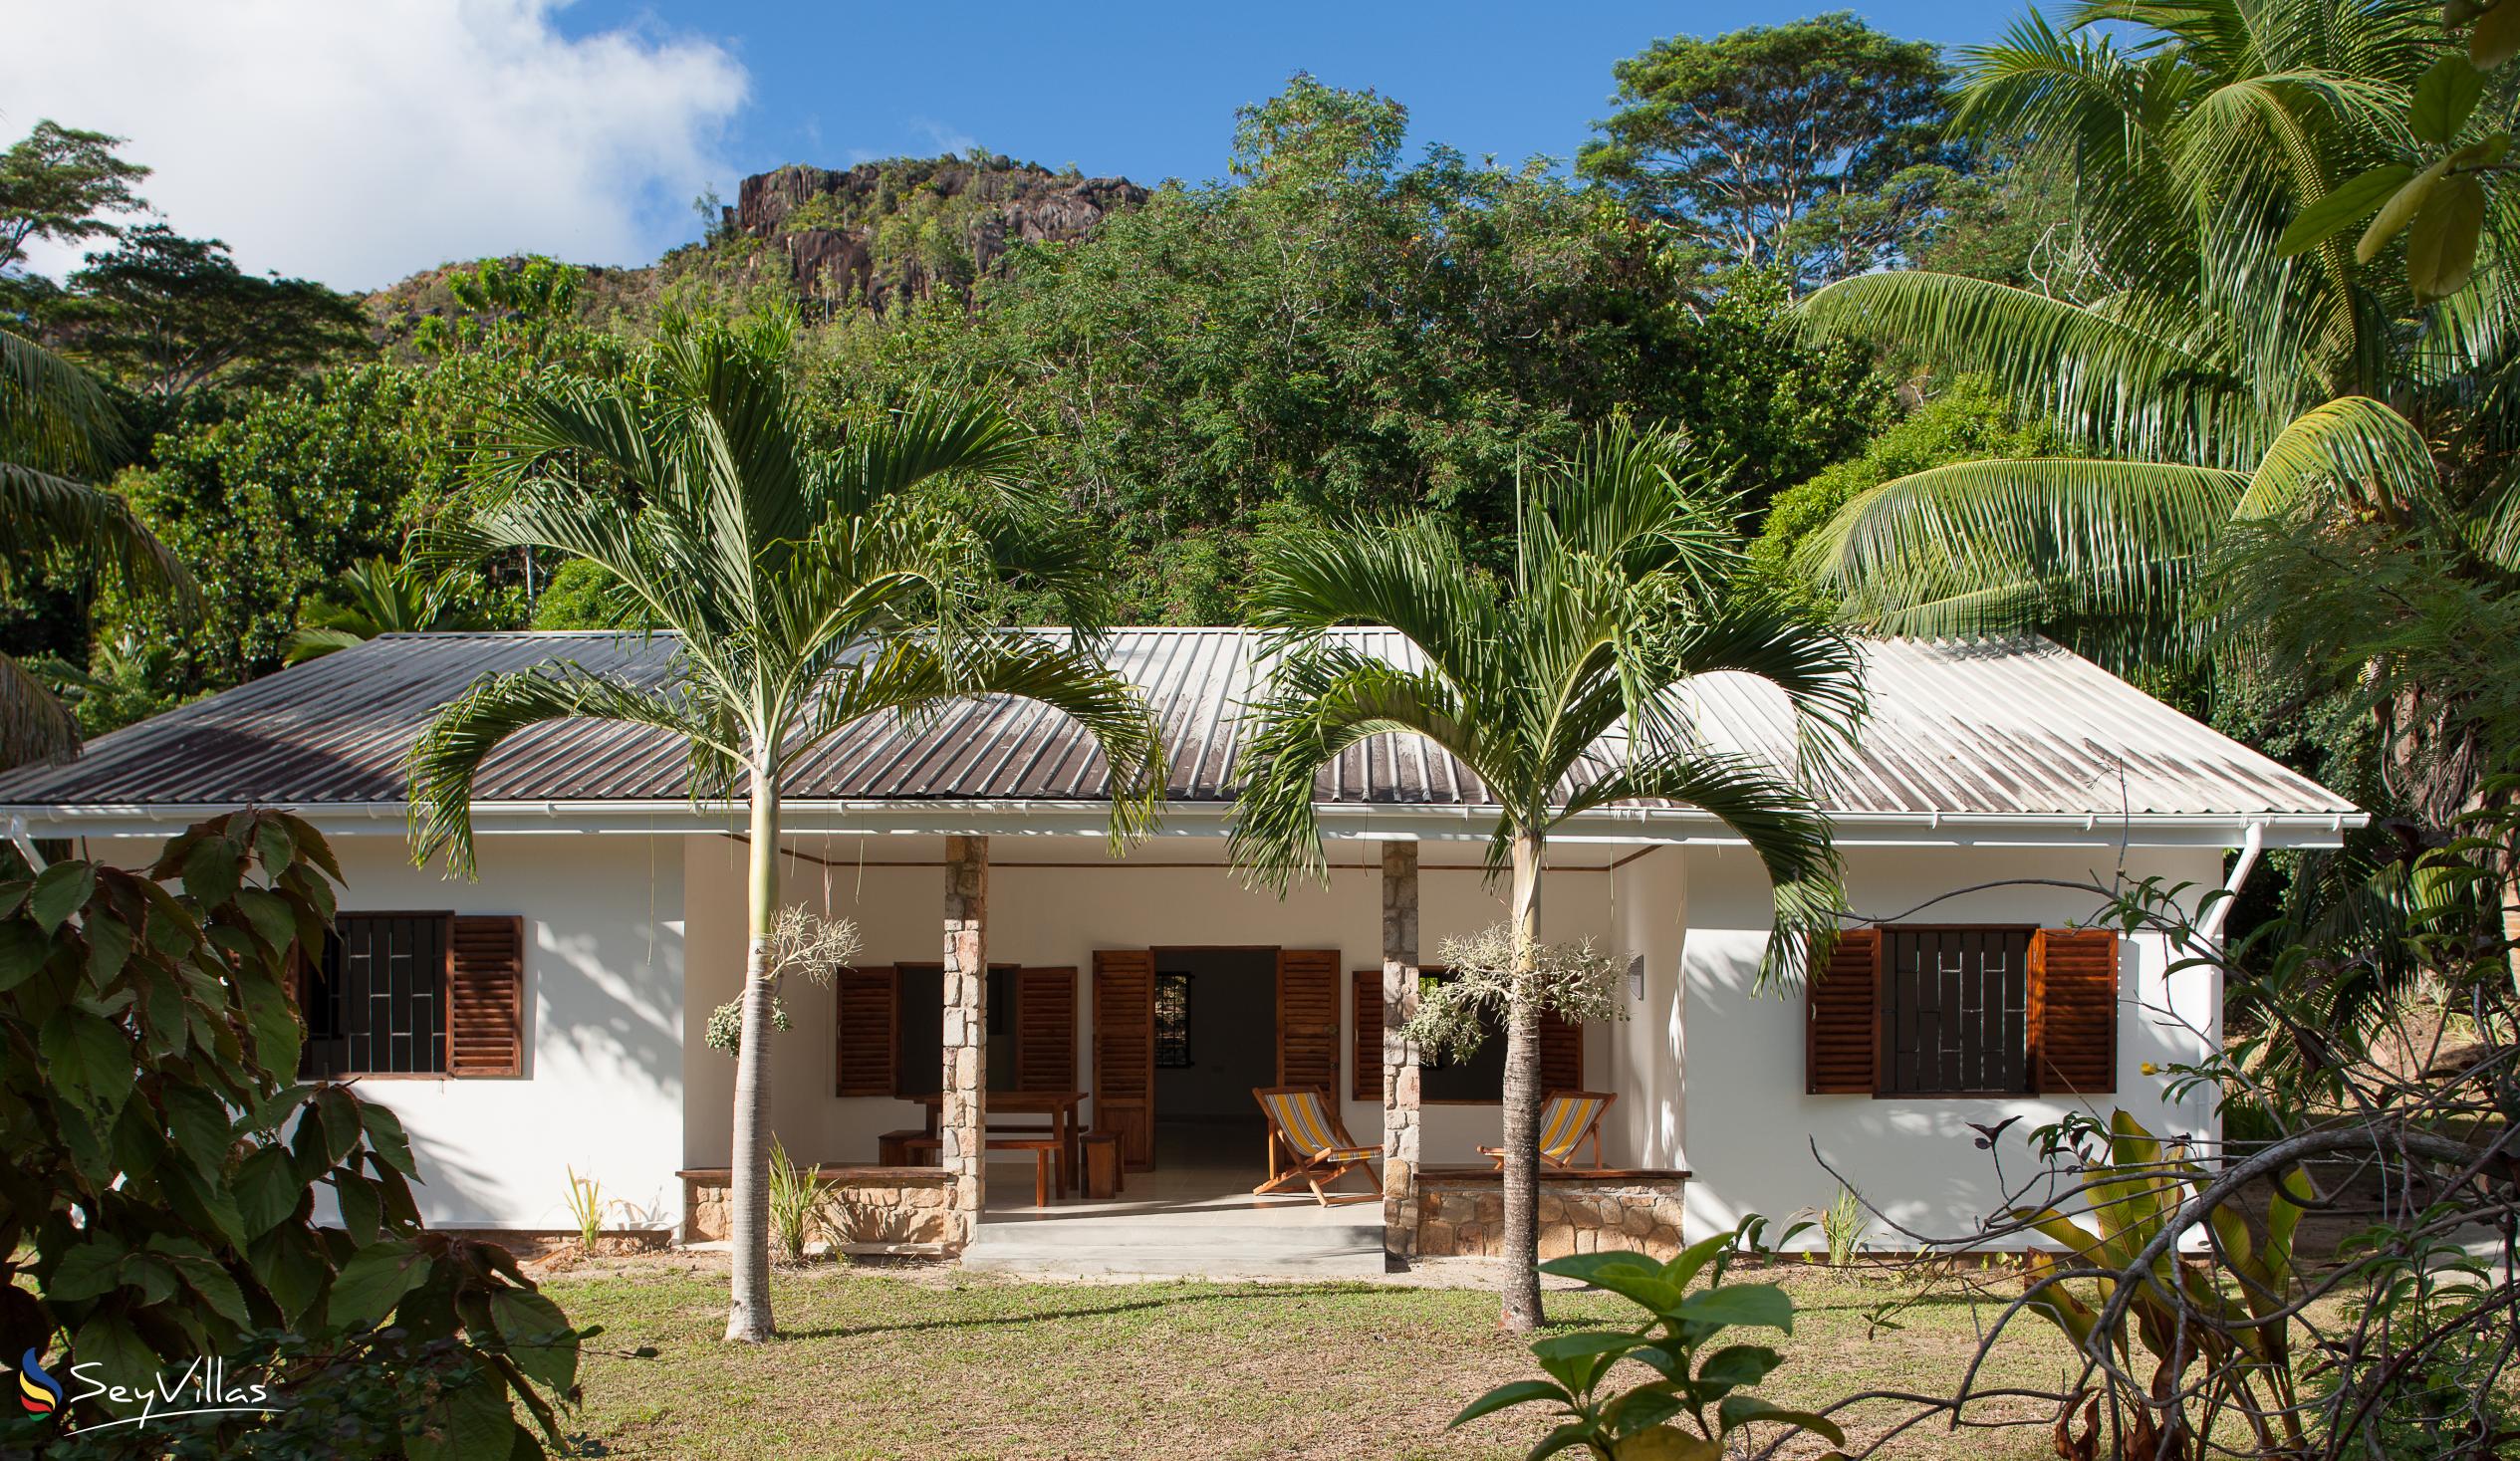 Foto 7: Villa Zananas - Aussenbereich - Praslin (Seychellen)